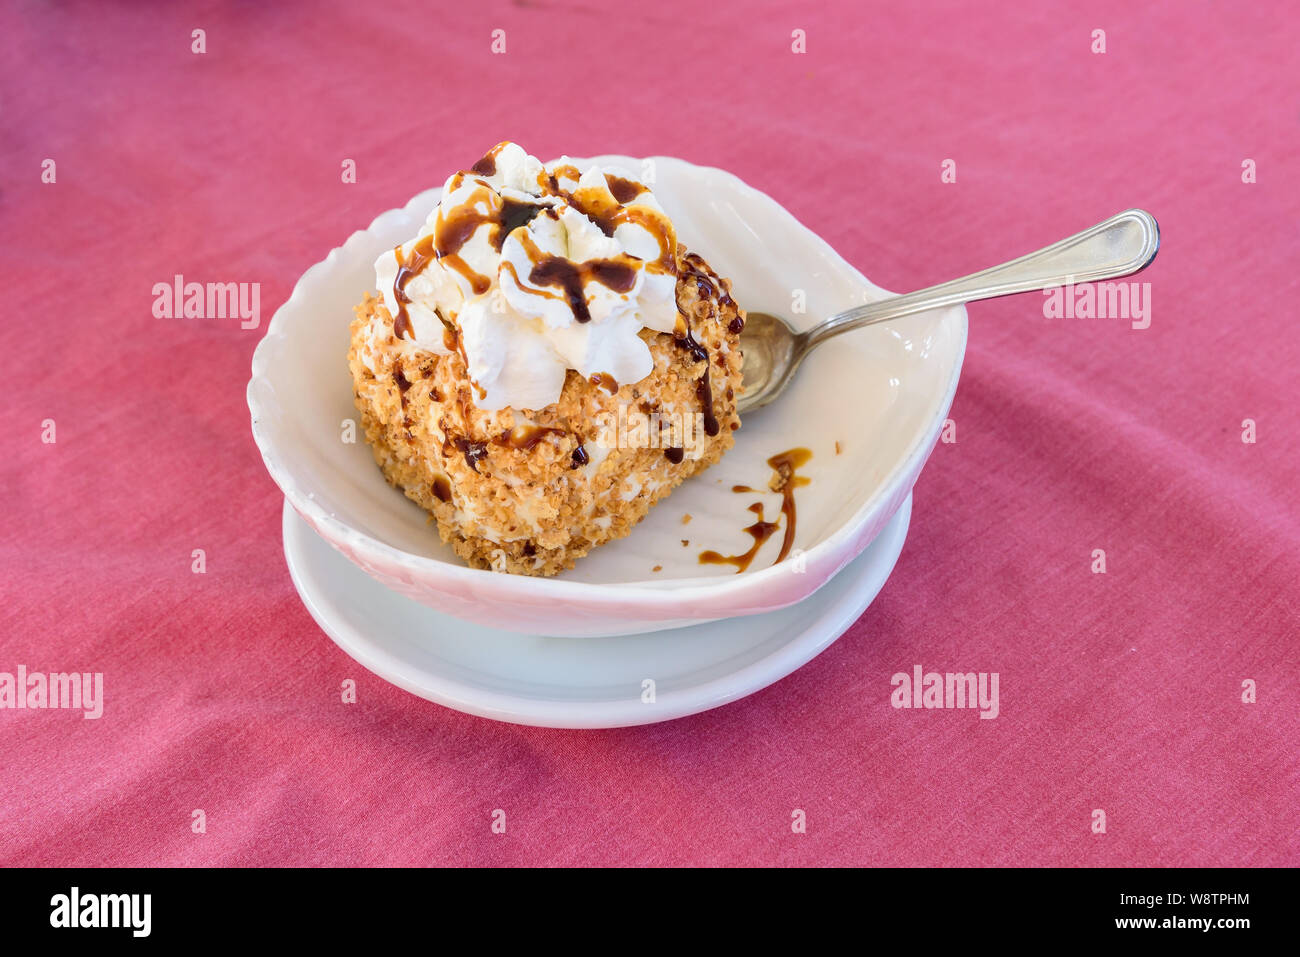 Italienische Eis Dessert mit Topping und Schlagsahne auf dem rosa Tischdecke Stockfoto